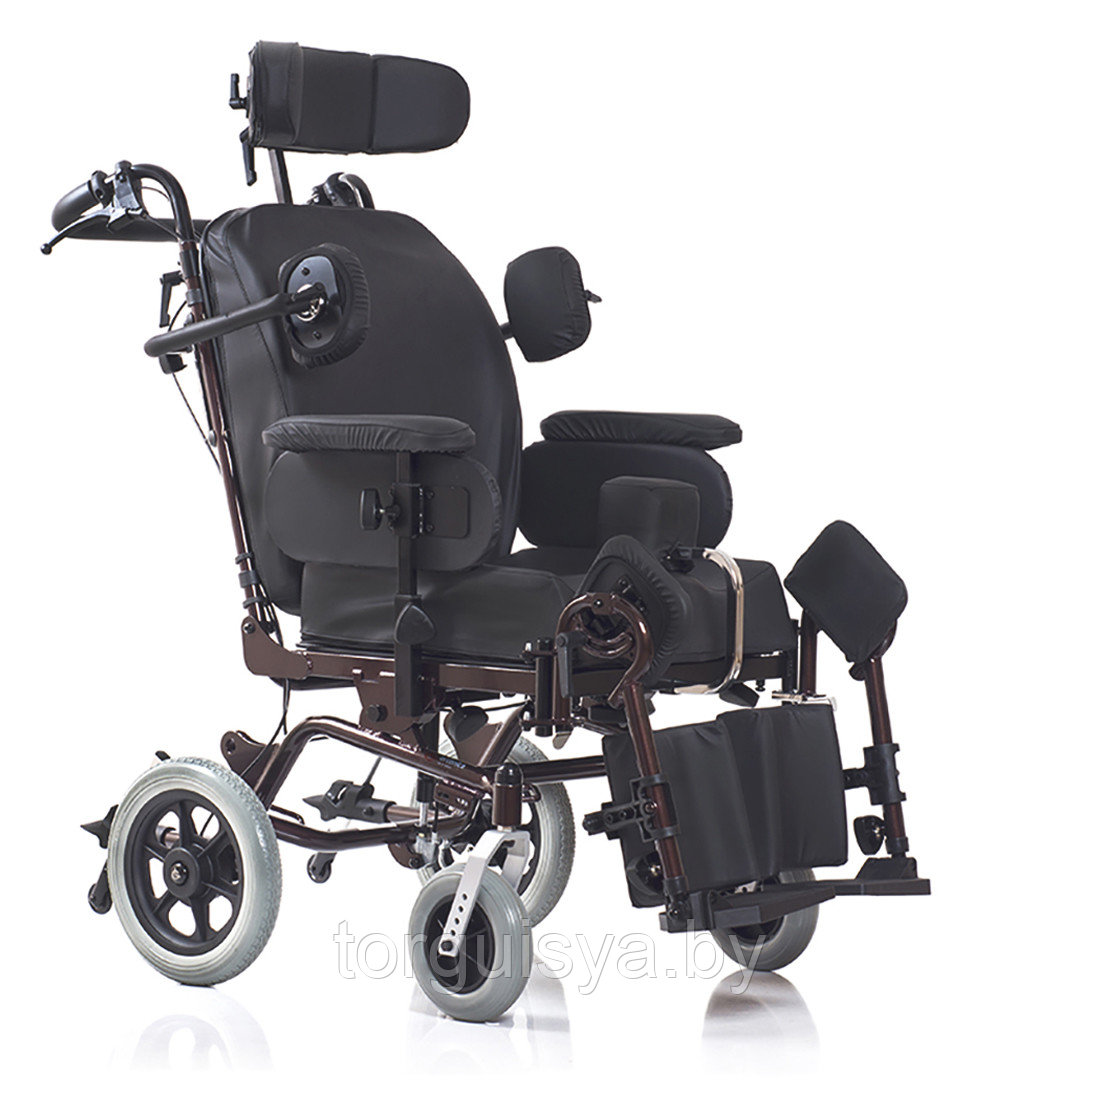 Кресло-коляска Ortonica Delux 570 S